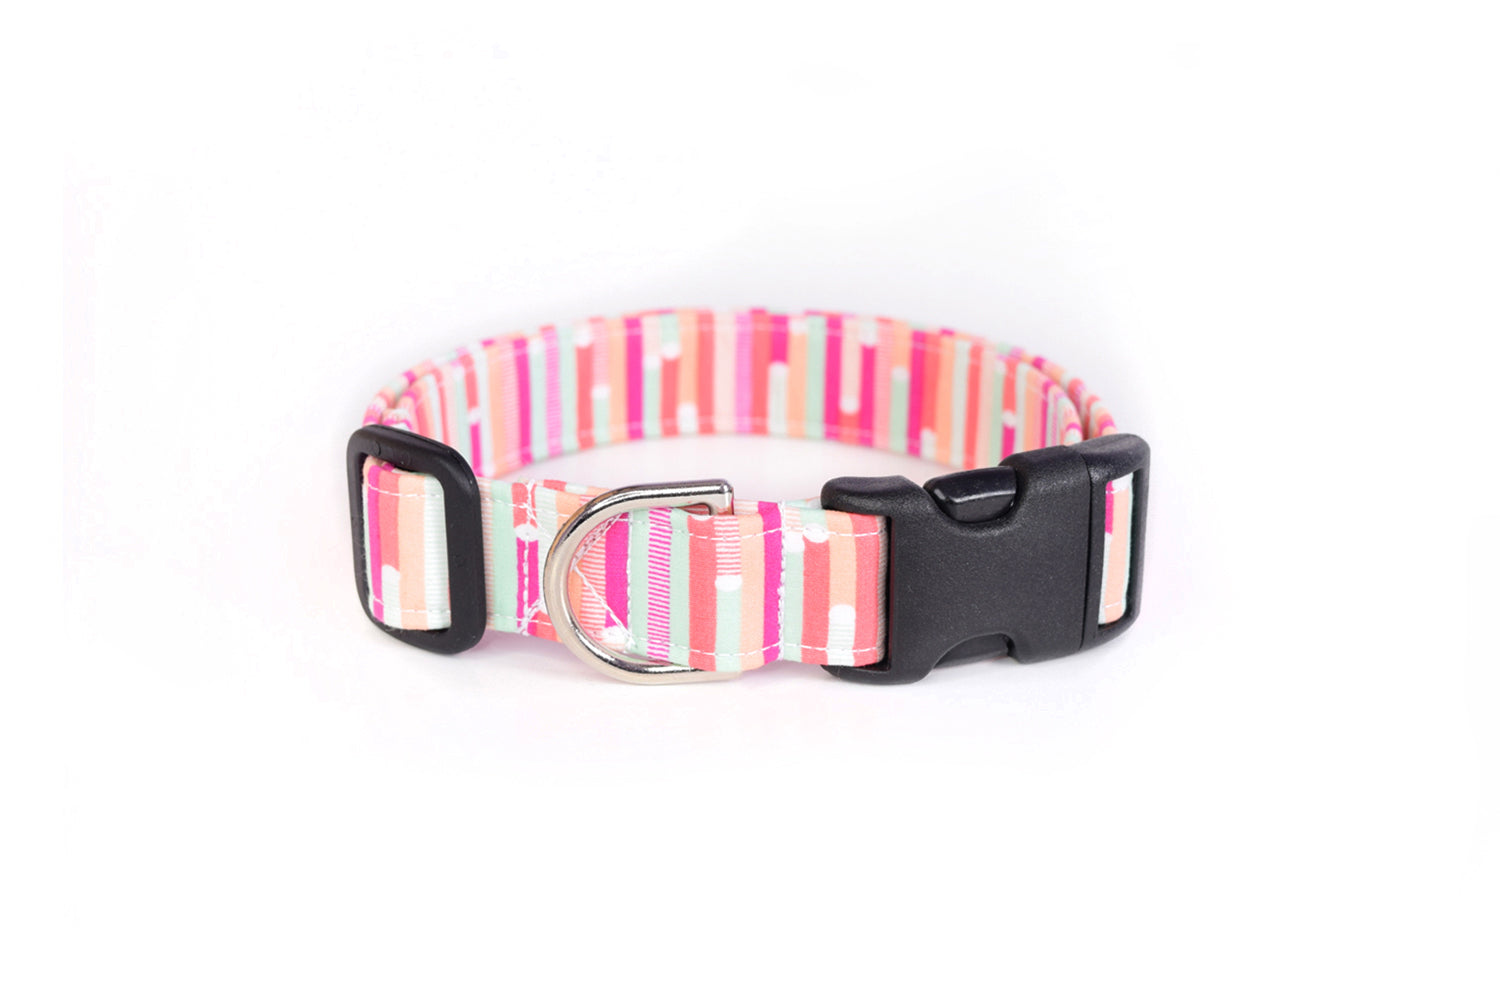 Cute Modern Abstract Pink Stripes Dog Collar - Handmade by Kira's Pet Shop